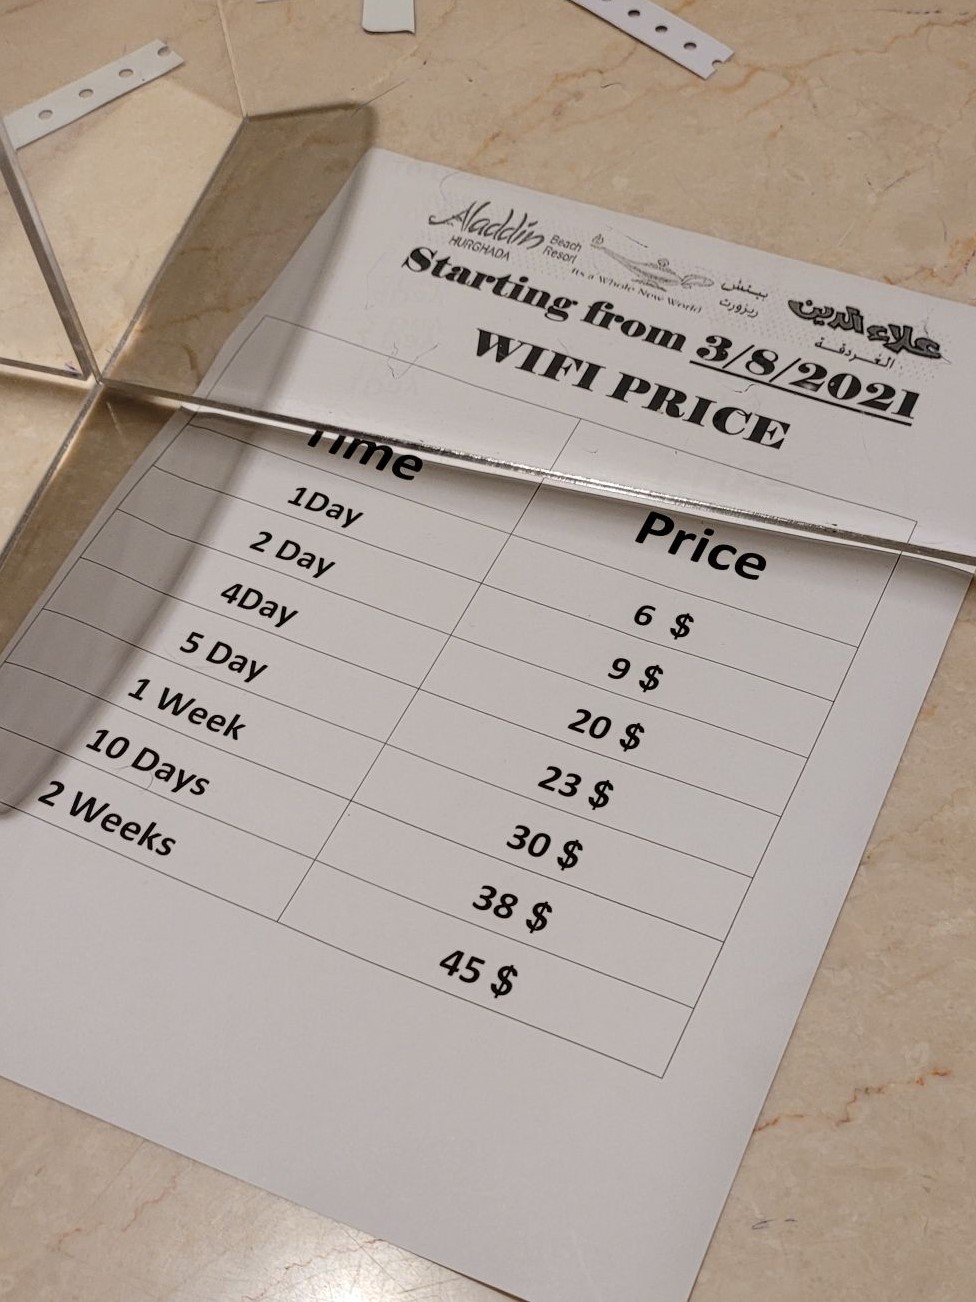 Tabulka s cenami za wifi.